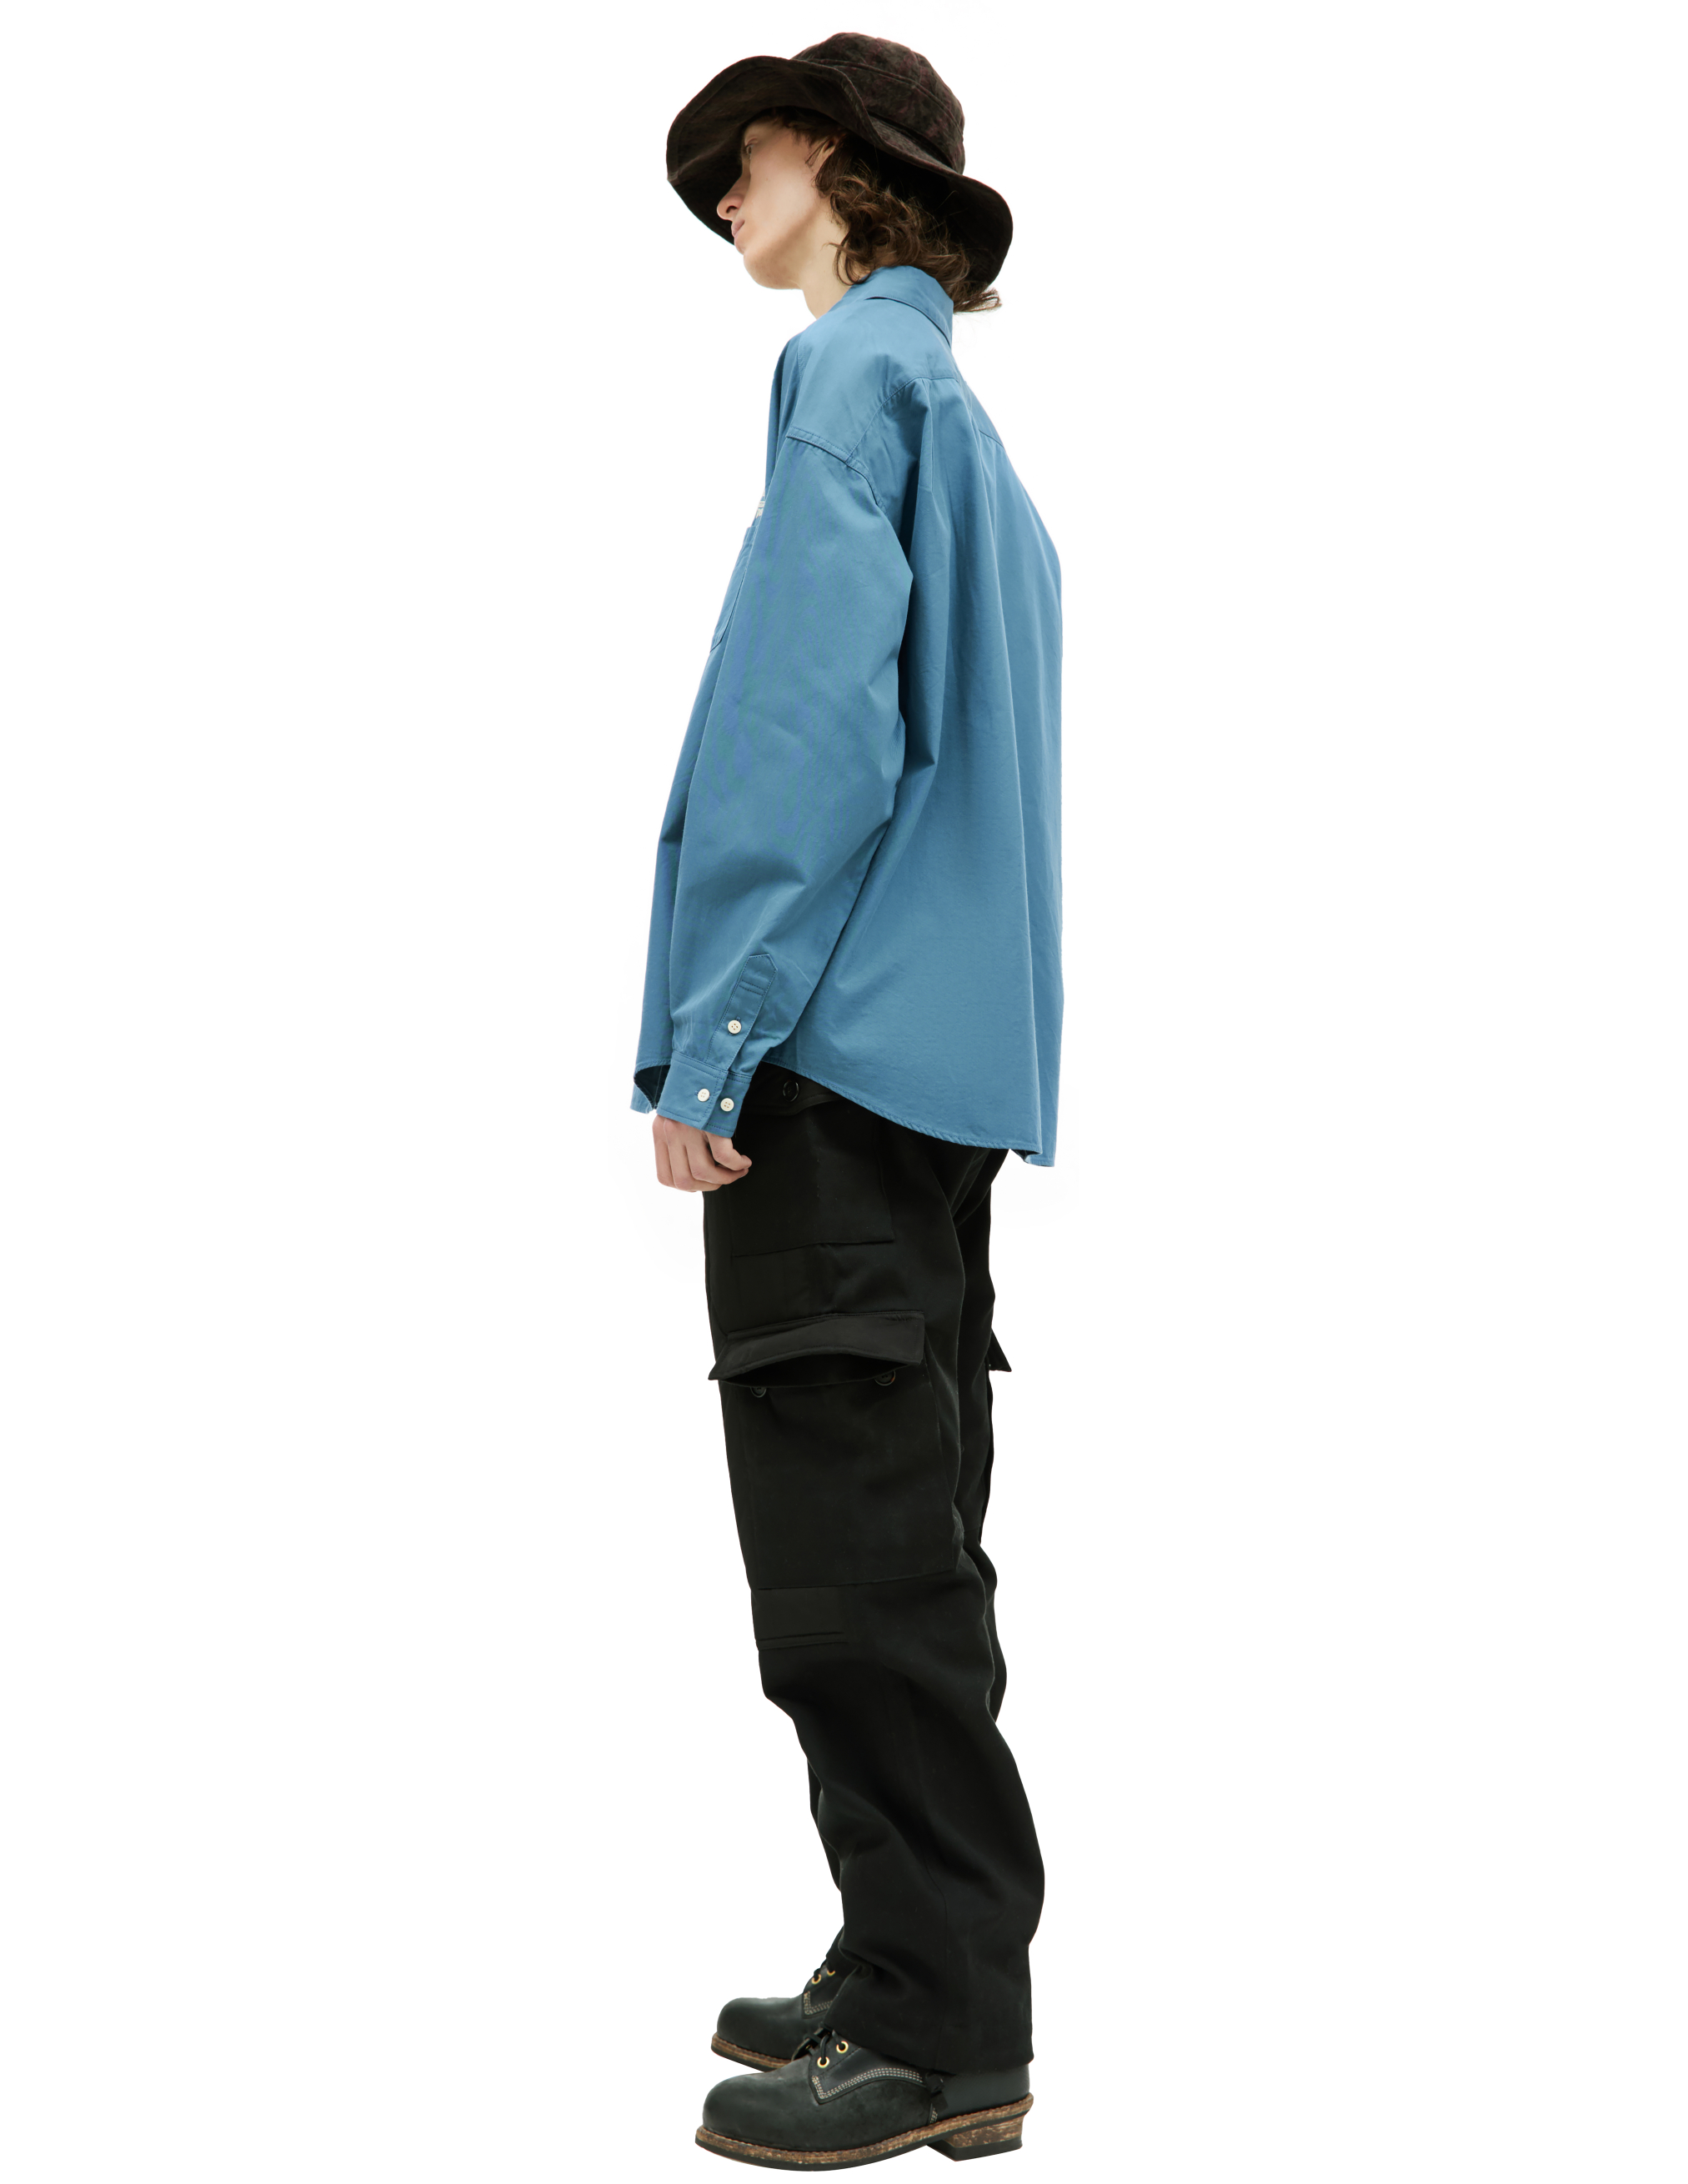 Хлопковая рубашка Palmer с вышивкой visvim 0123205011015, размер 4;5 - фото 2